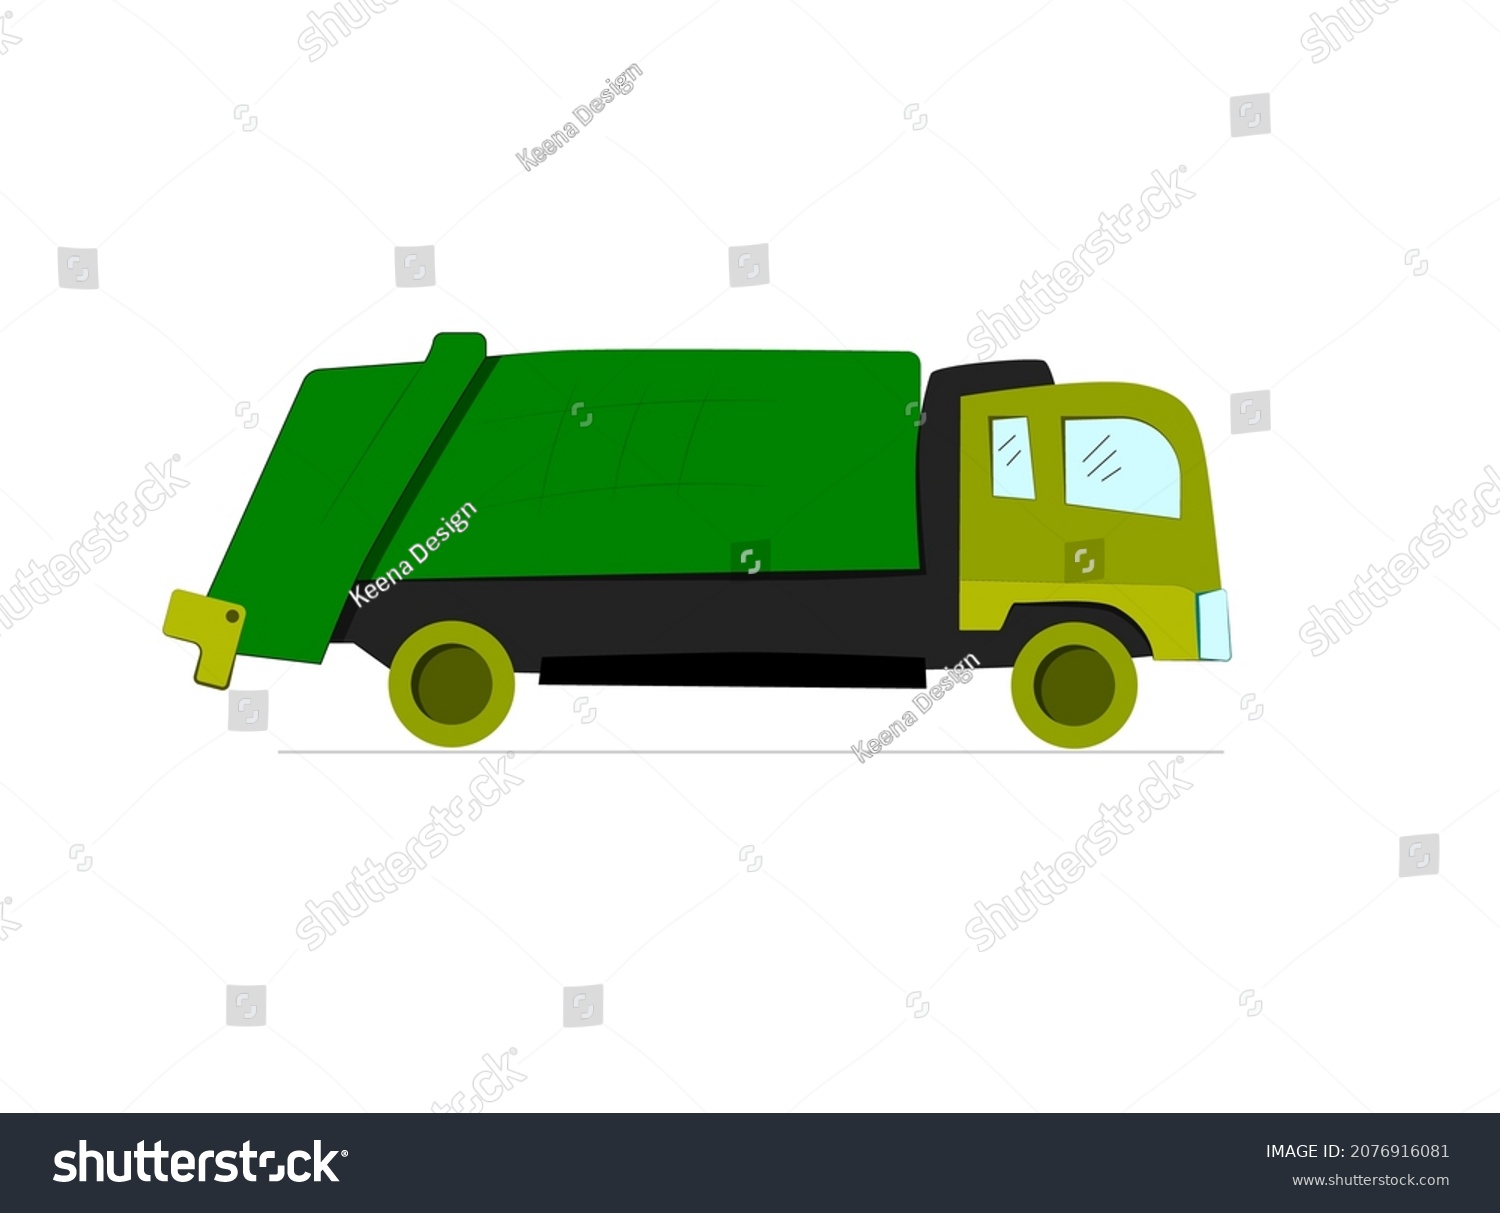 SVG of Garbage truck cartoon vector illustration. Green truck. svg